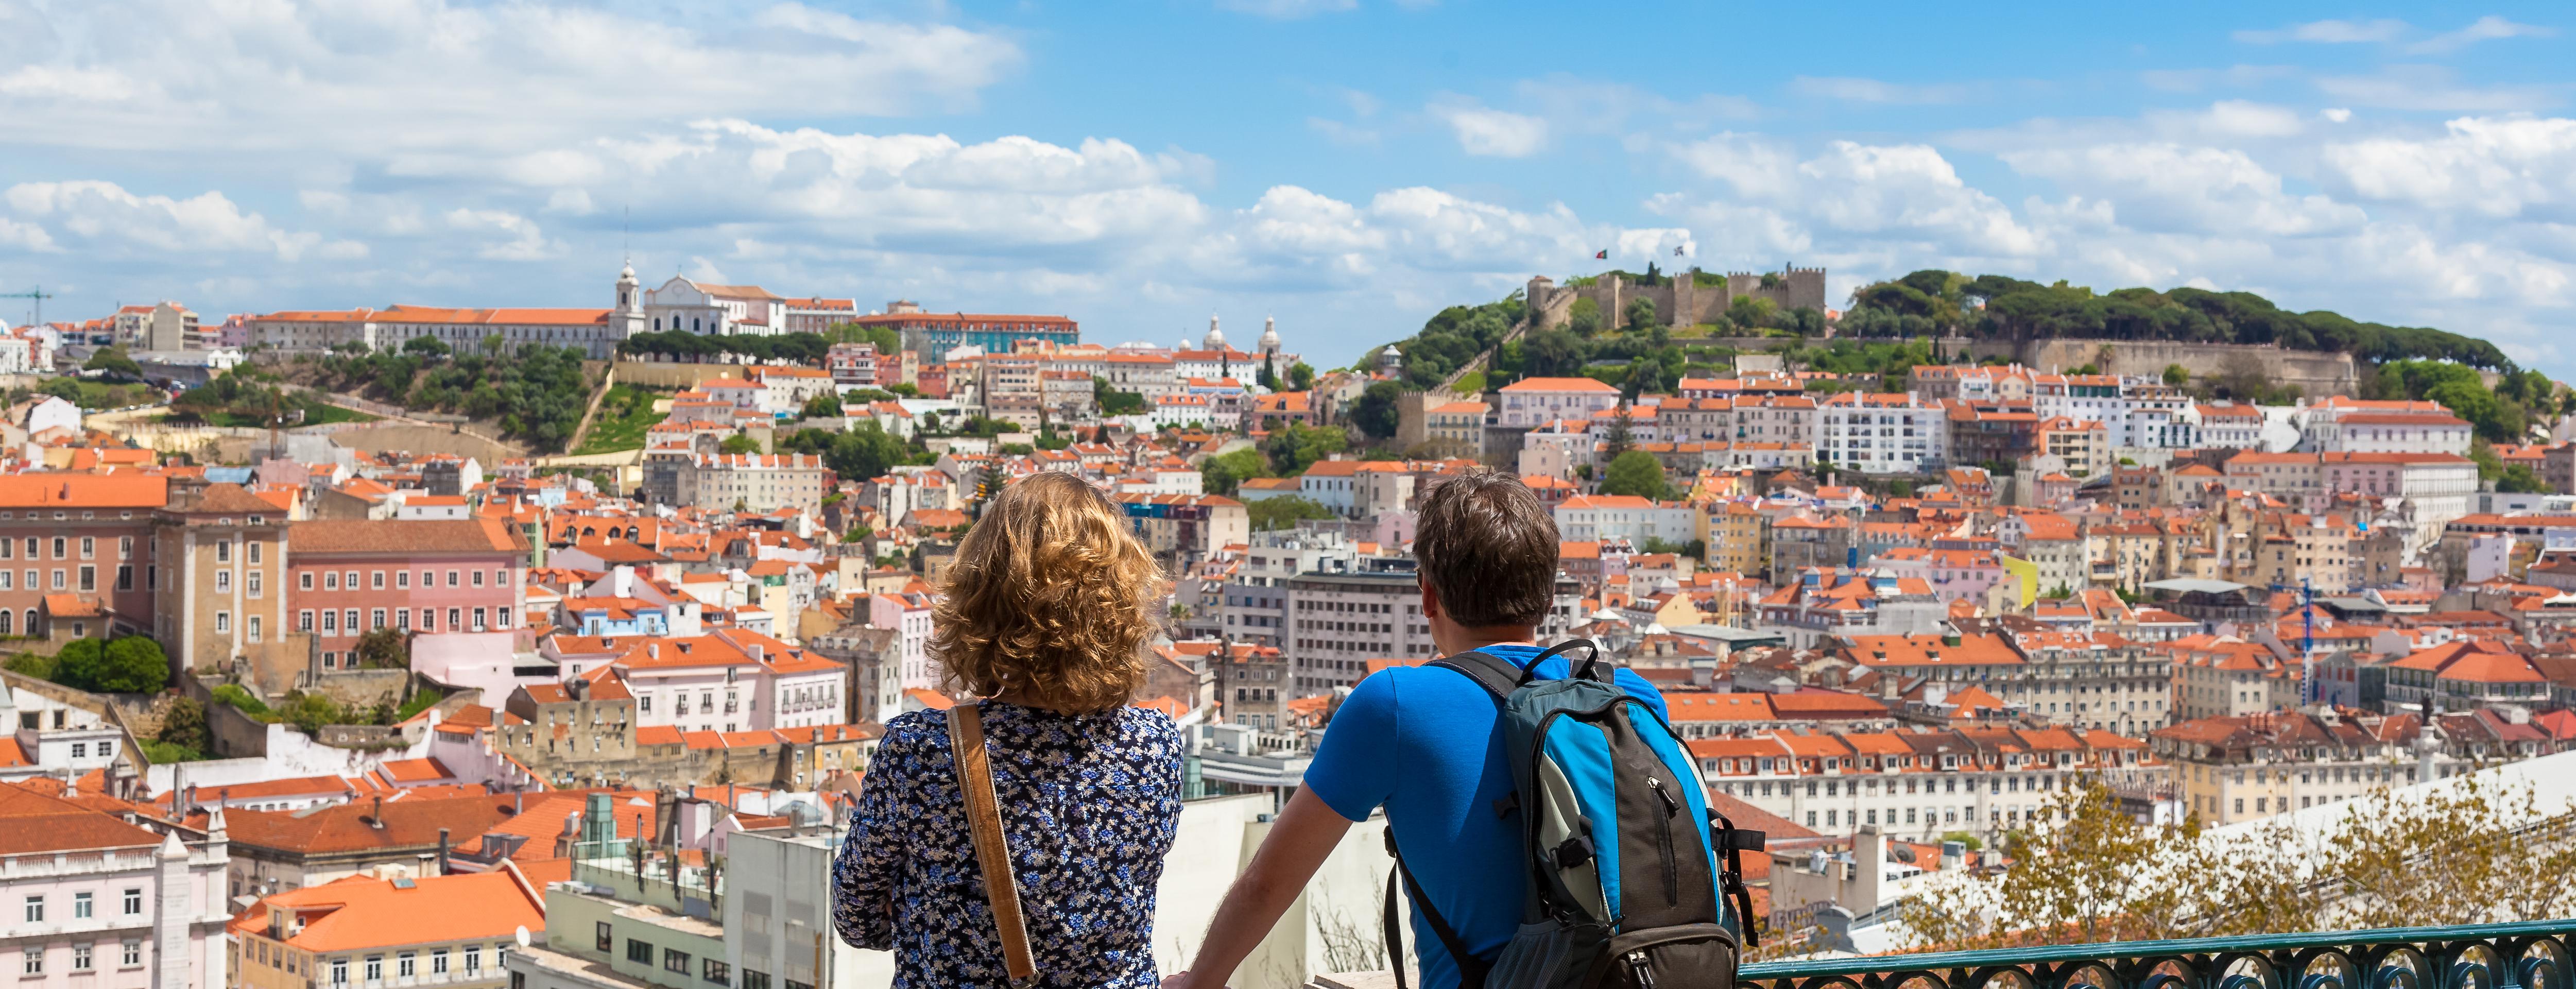 Visite des vues panoramiques en tuk-tuk - Lisbonne